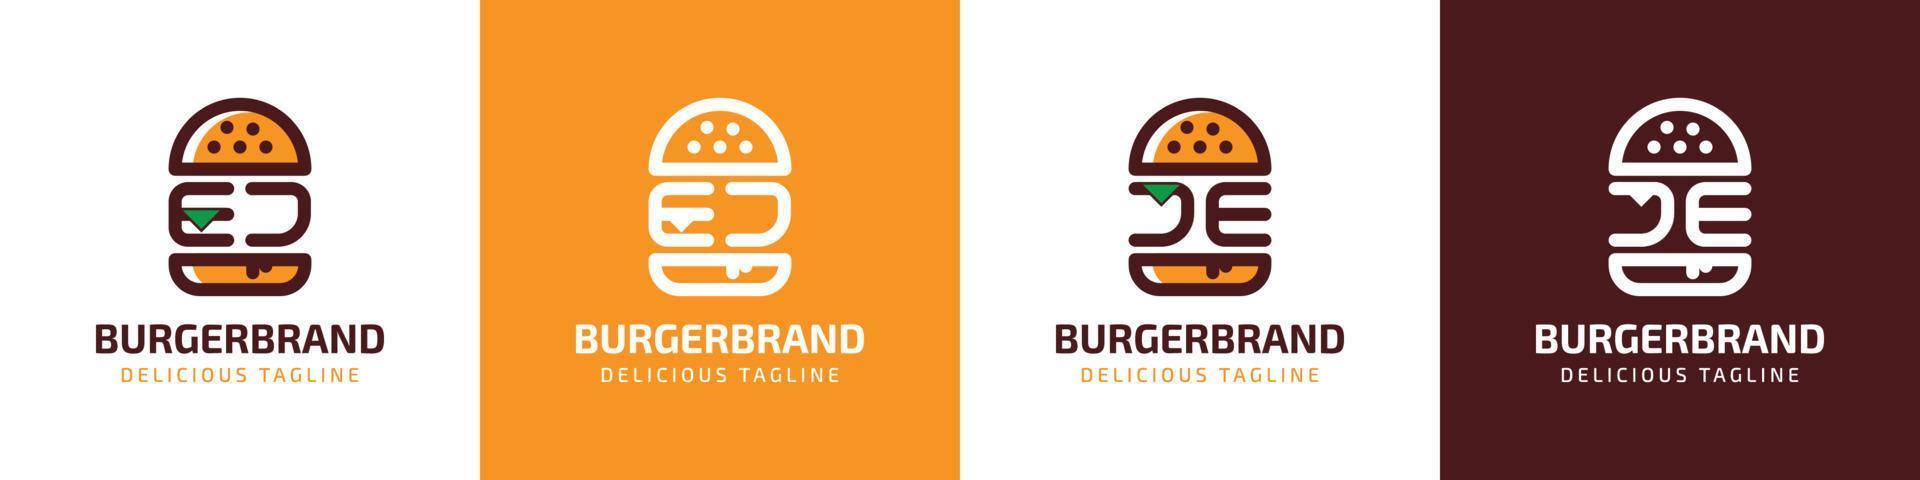 carta ej e je hamburguer logotipo, adequado para qualquer o negócio relacionado para hamburguer com ej ou je iniciais. vetor